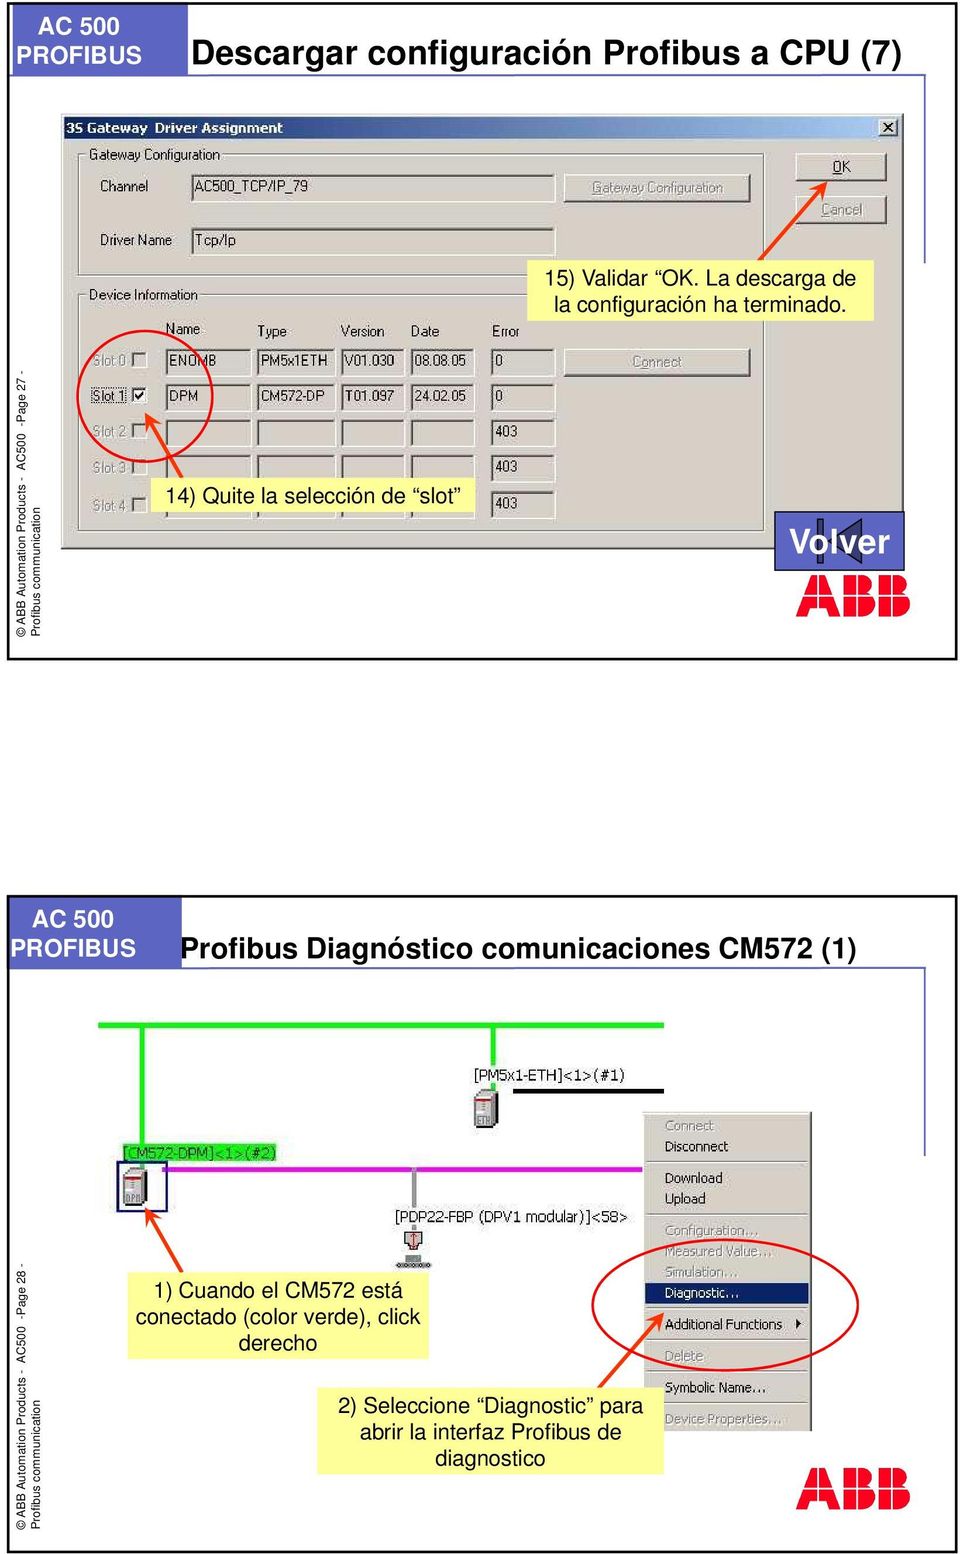 ABB Automation Products - AC500 -Page 27-14) Quite la selección de slot Volver Profibus Diagnóstico